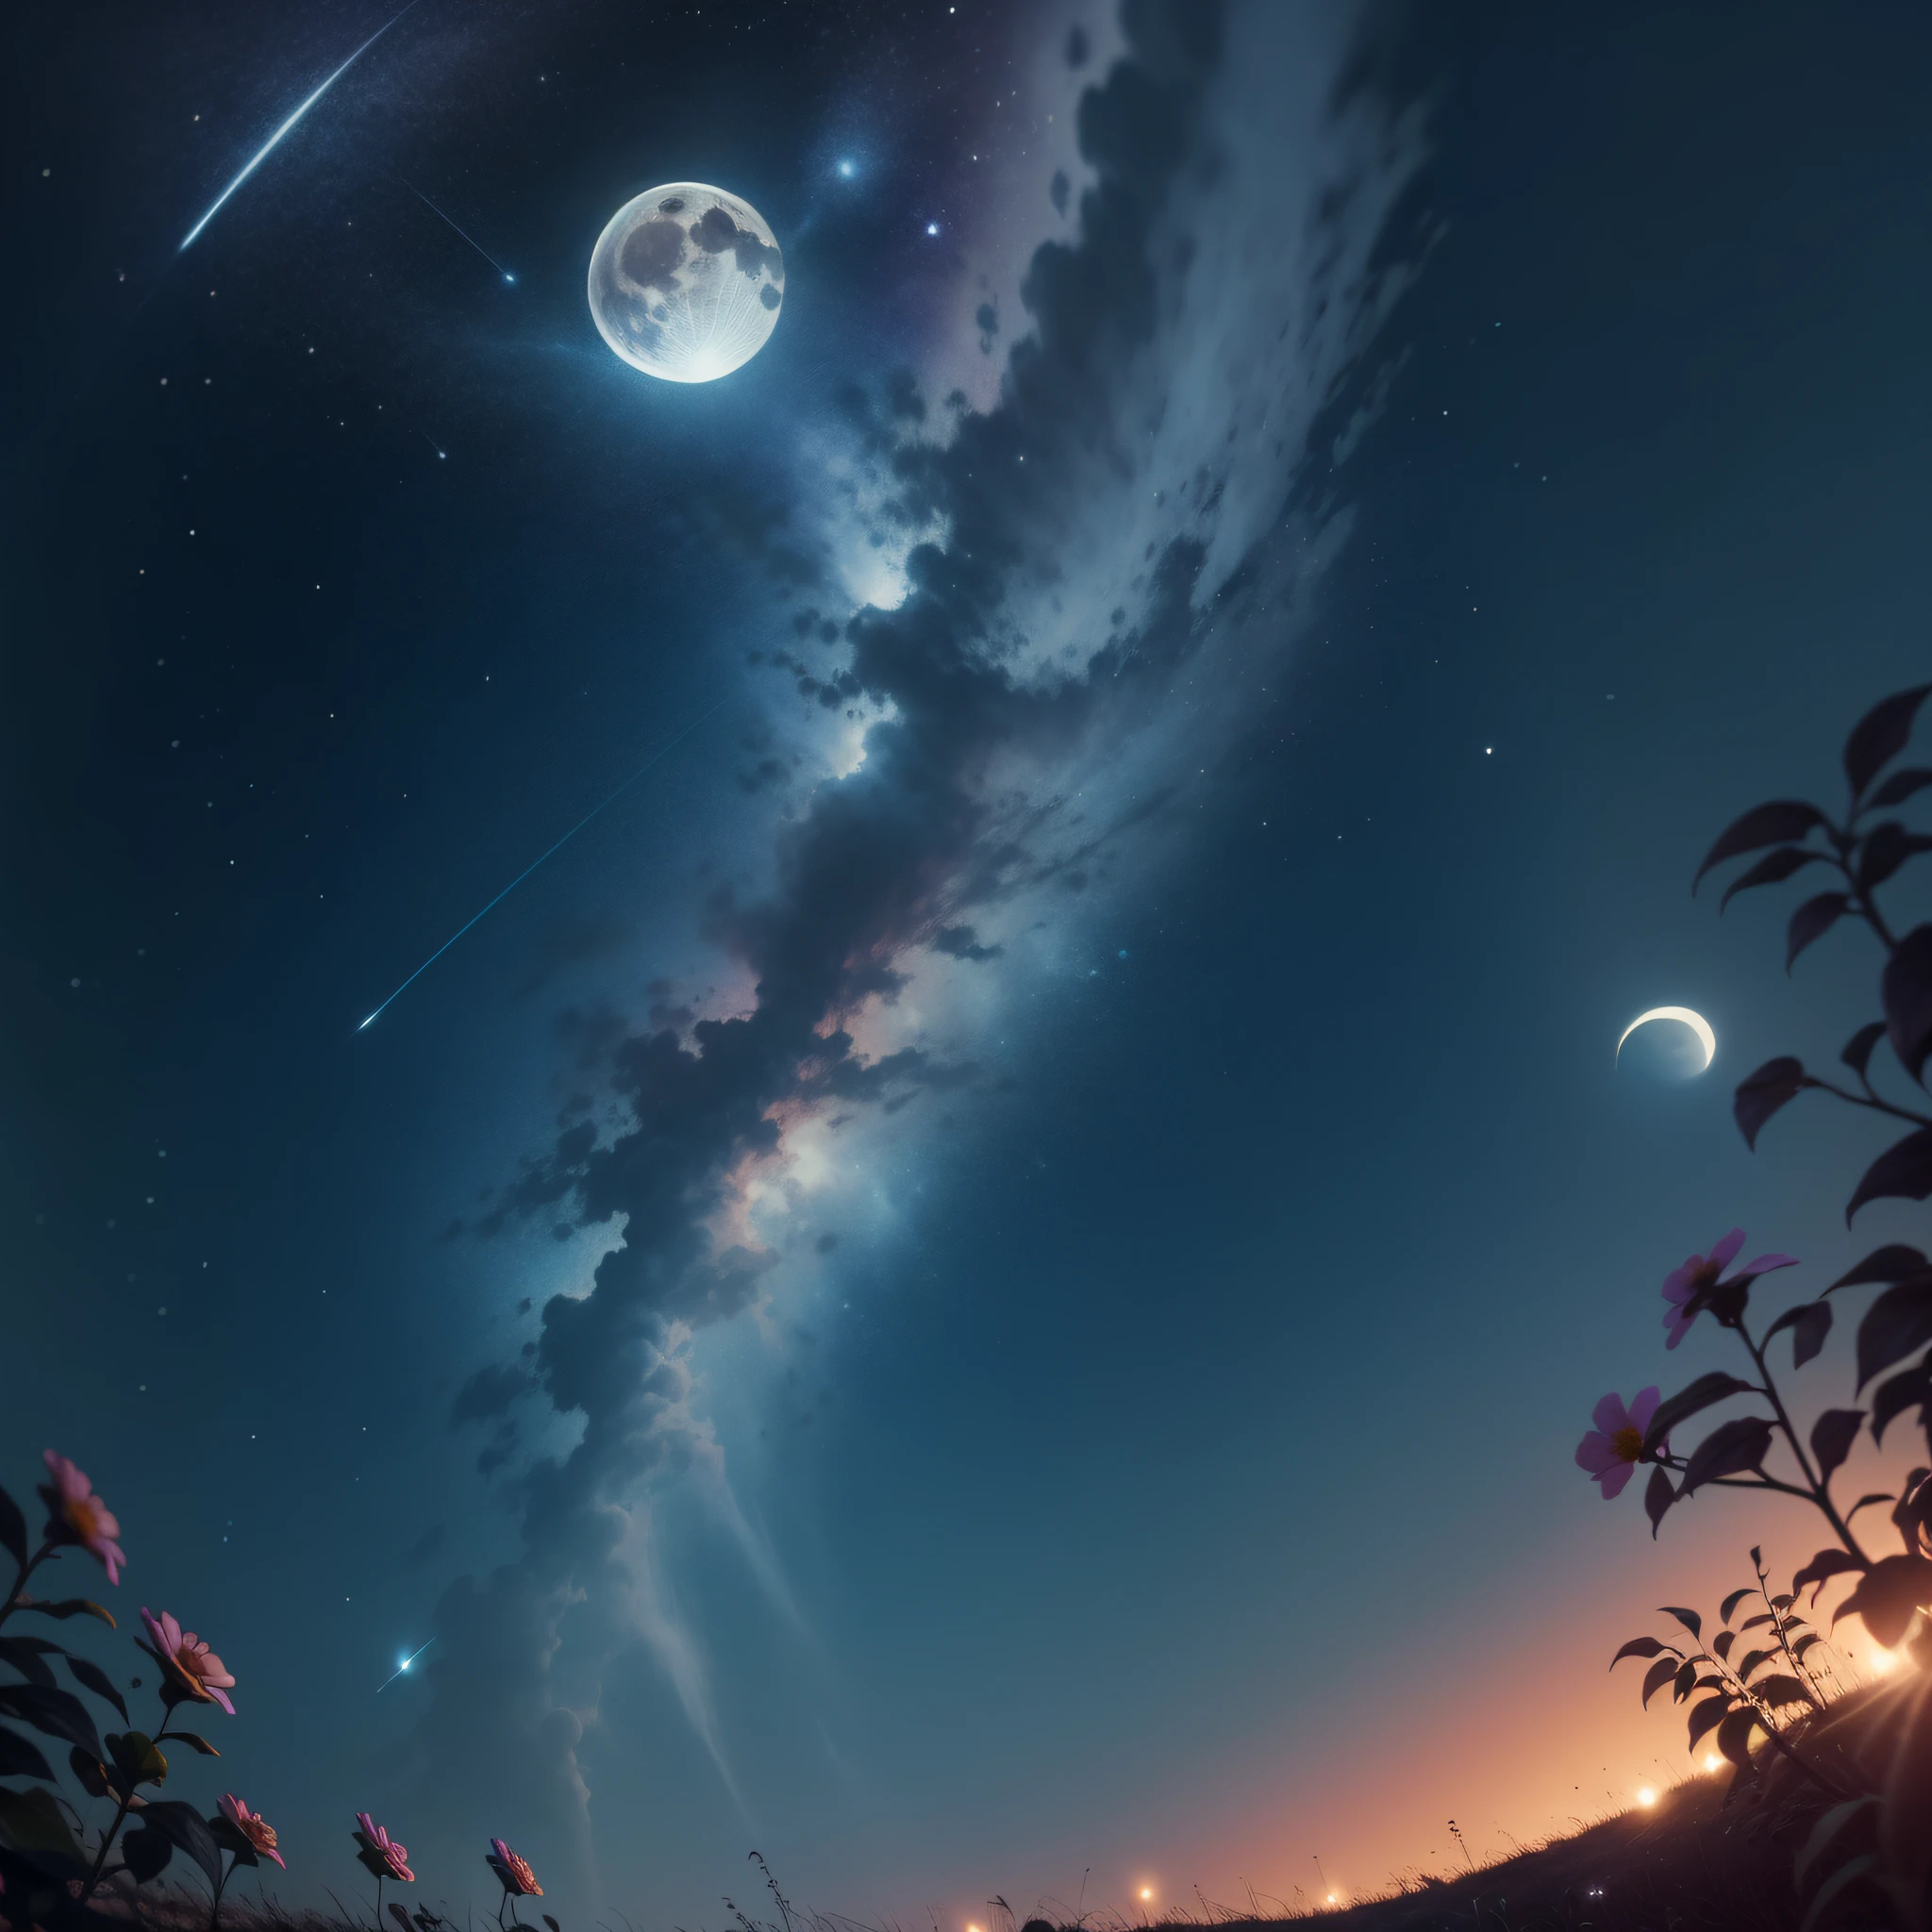 คืนพระจันทร์เต็มดวง, ท้องฟ้าสดใส, ดาวตกกำลังตกลงมา, ดอกไม้กำลังไหว, พระจันทร์เป็นประกายและเป็นประกาย